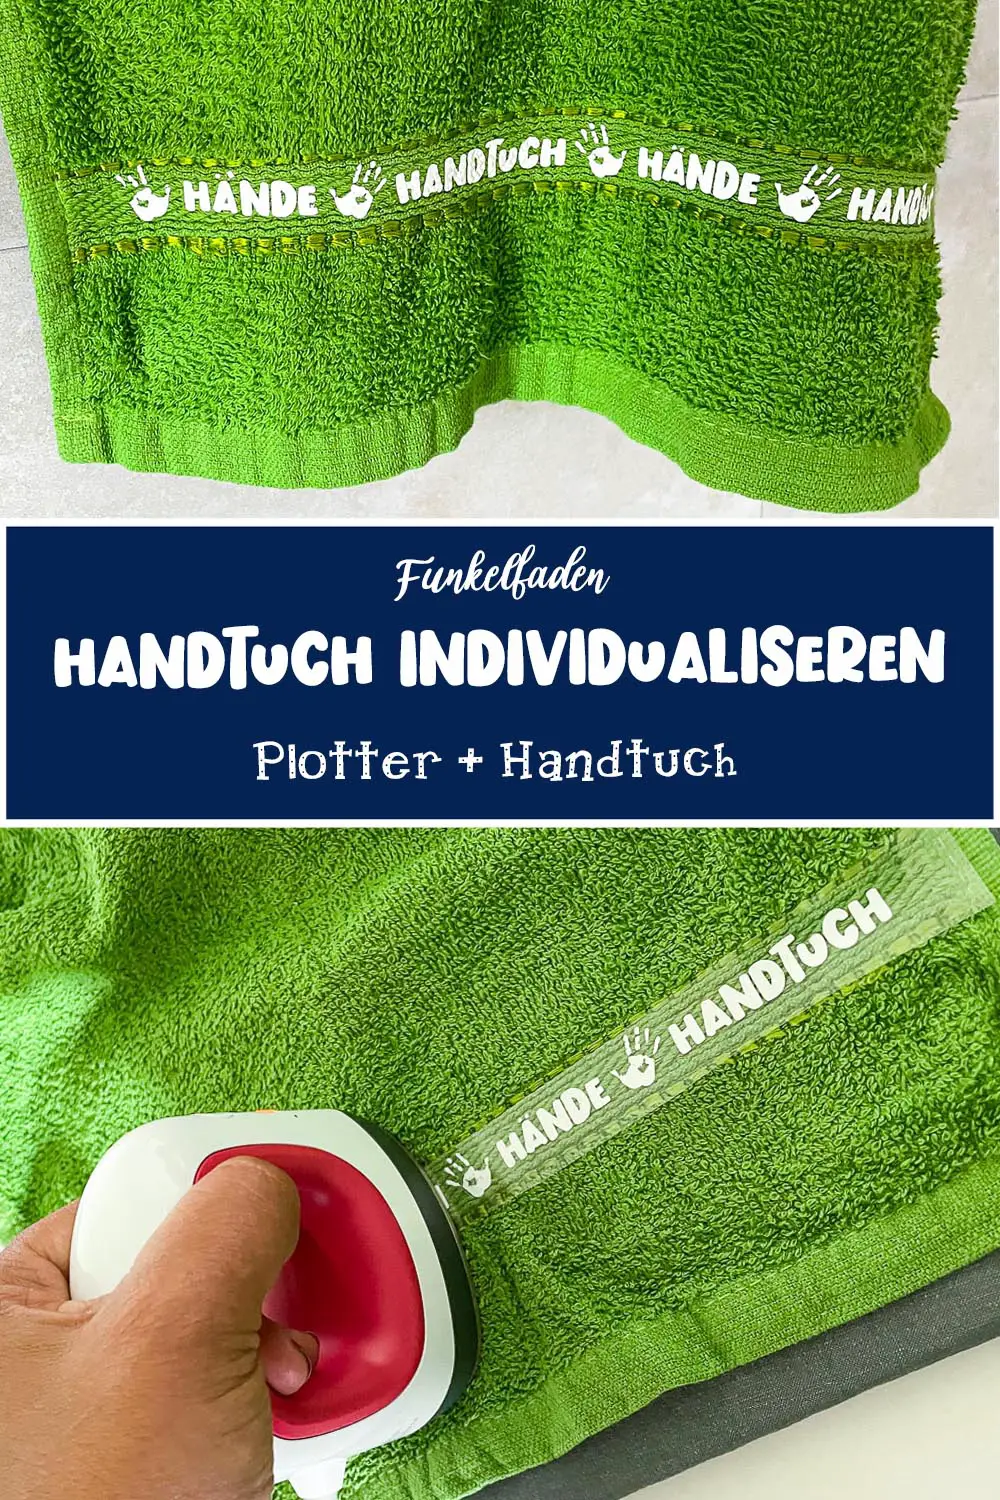 Handtuch individualiseren + Plotten